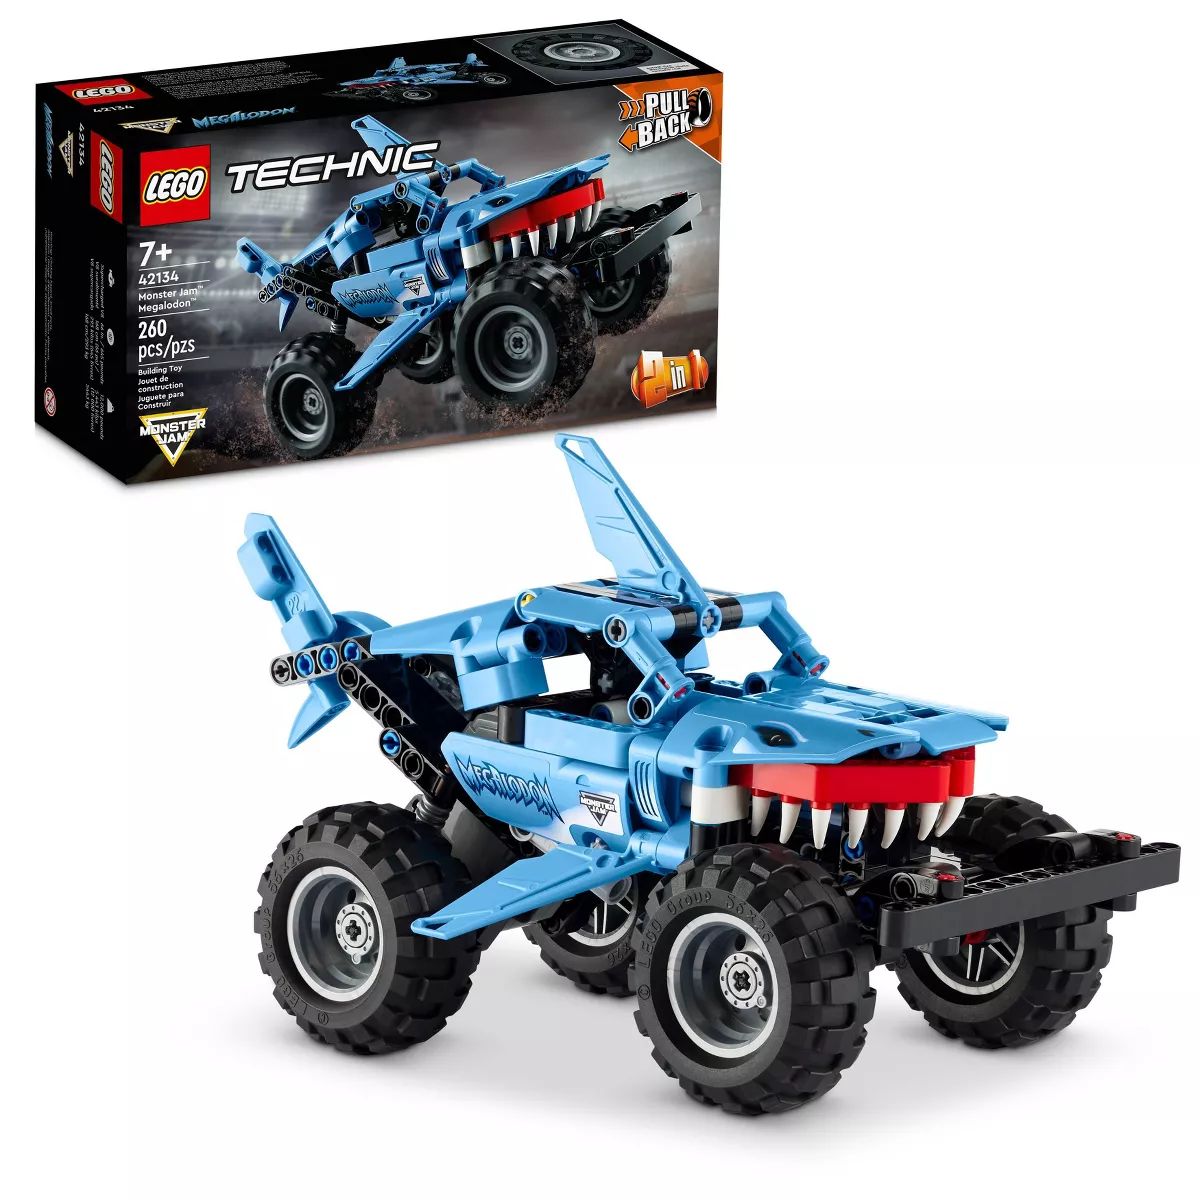 LEGO Technic Monster Jam Megalodon Pull Back Truck Toy 42134 | Target